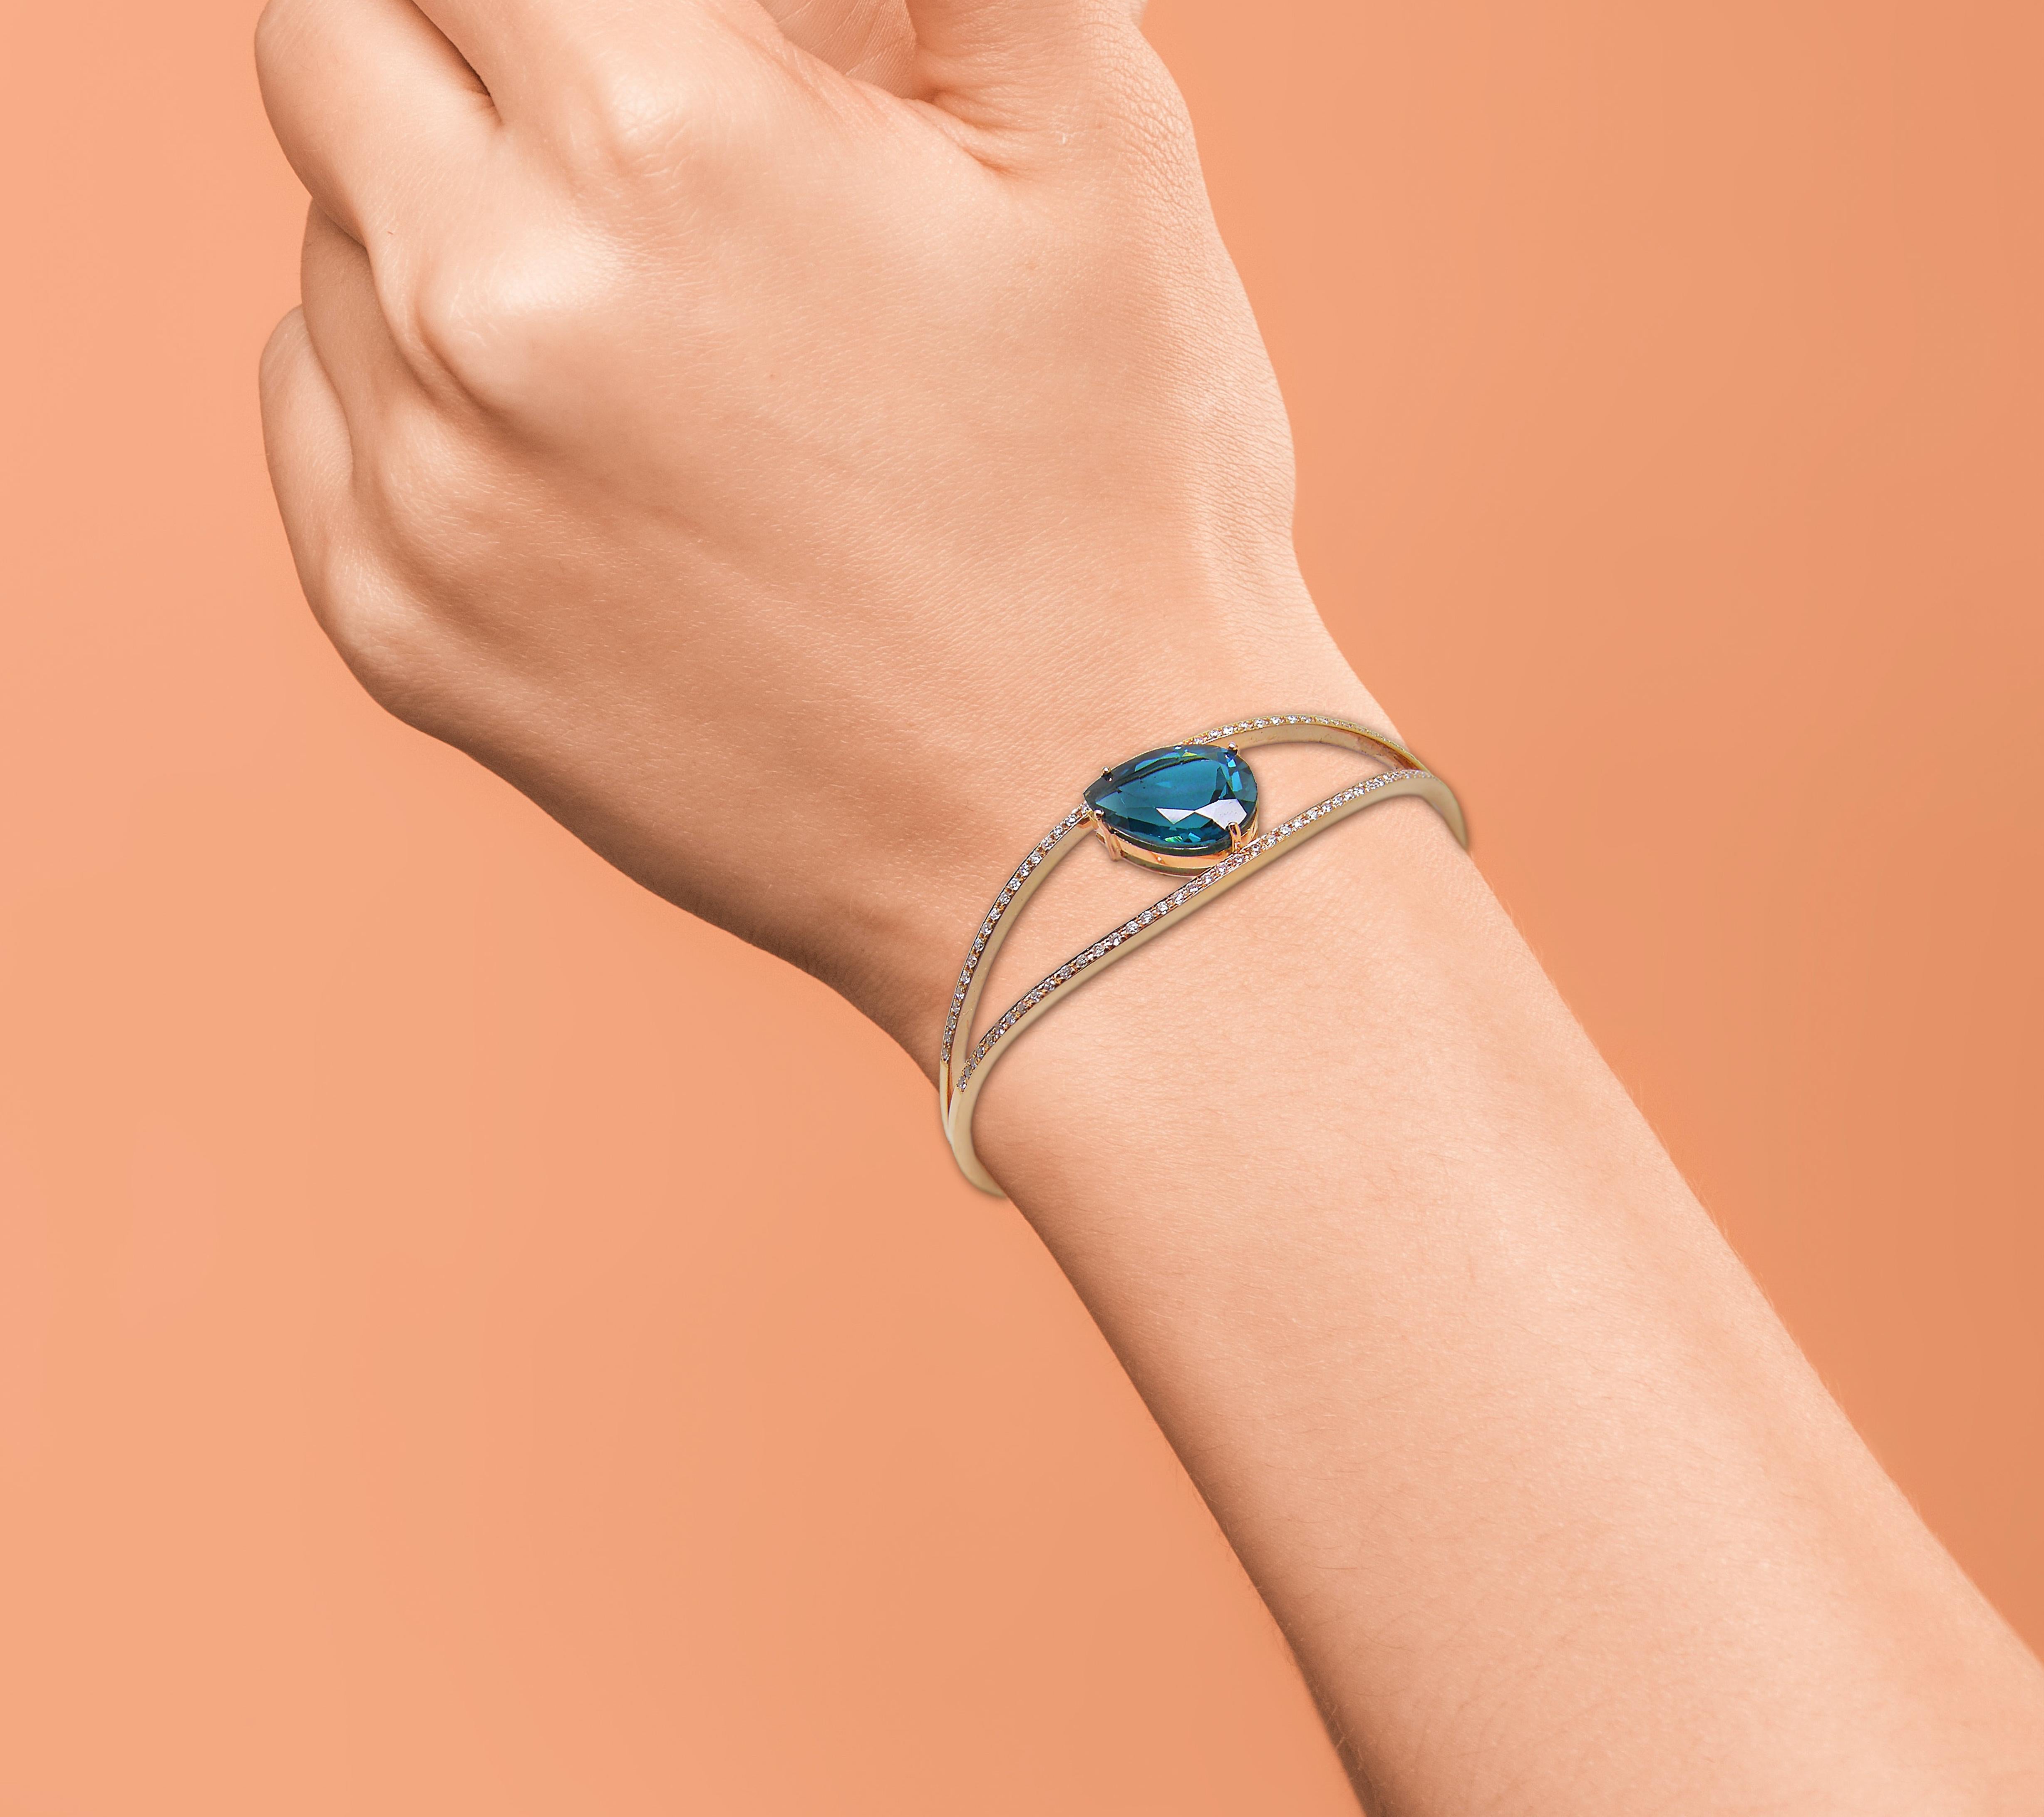 blue topaz gold bracelet